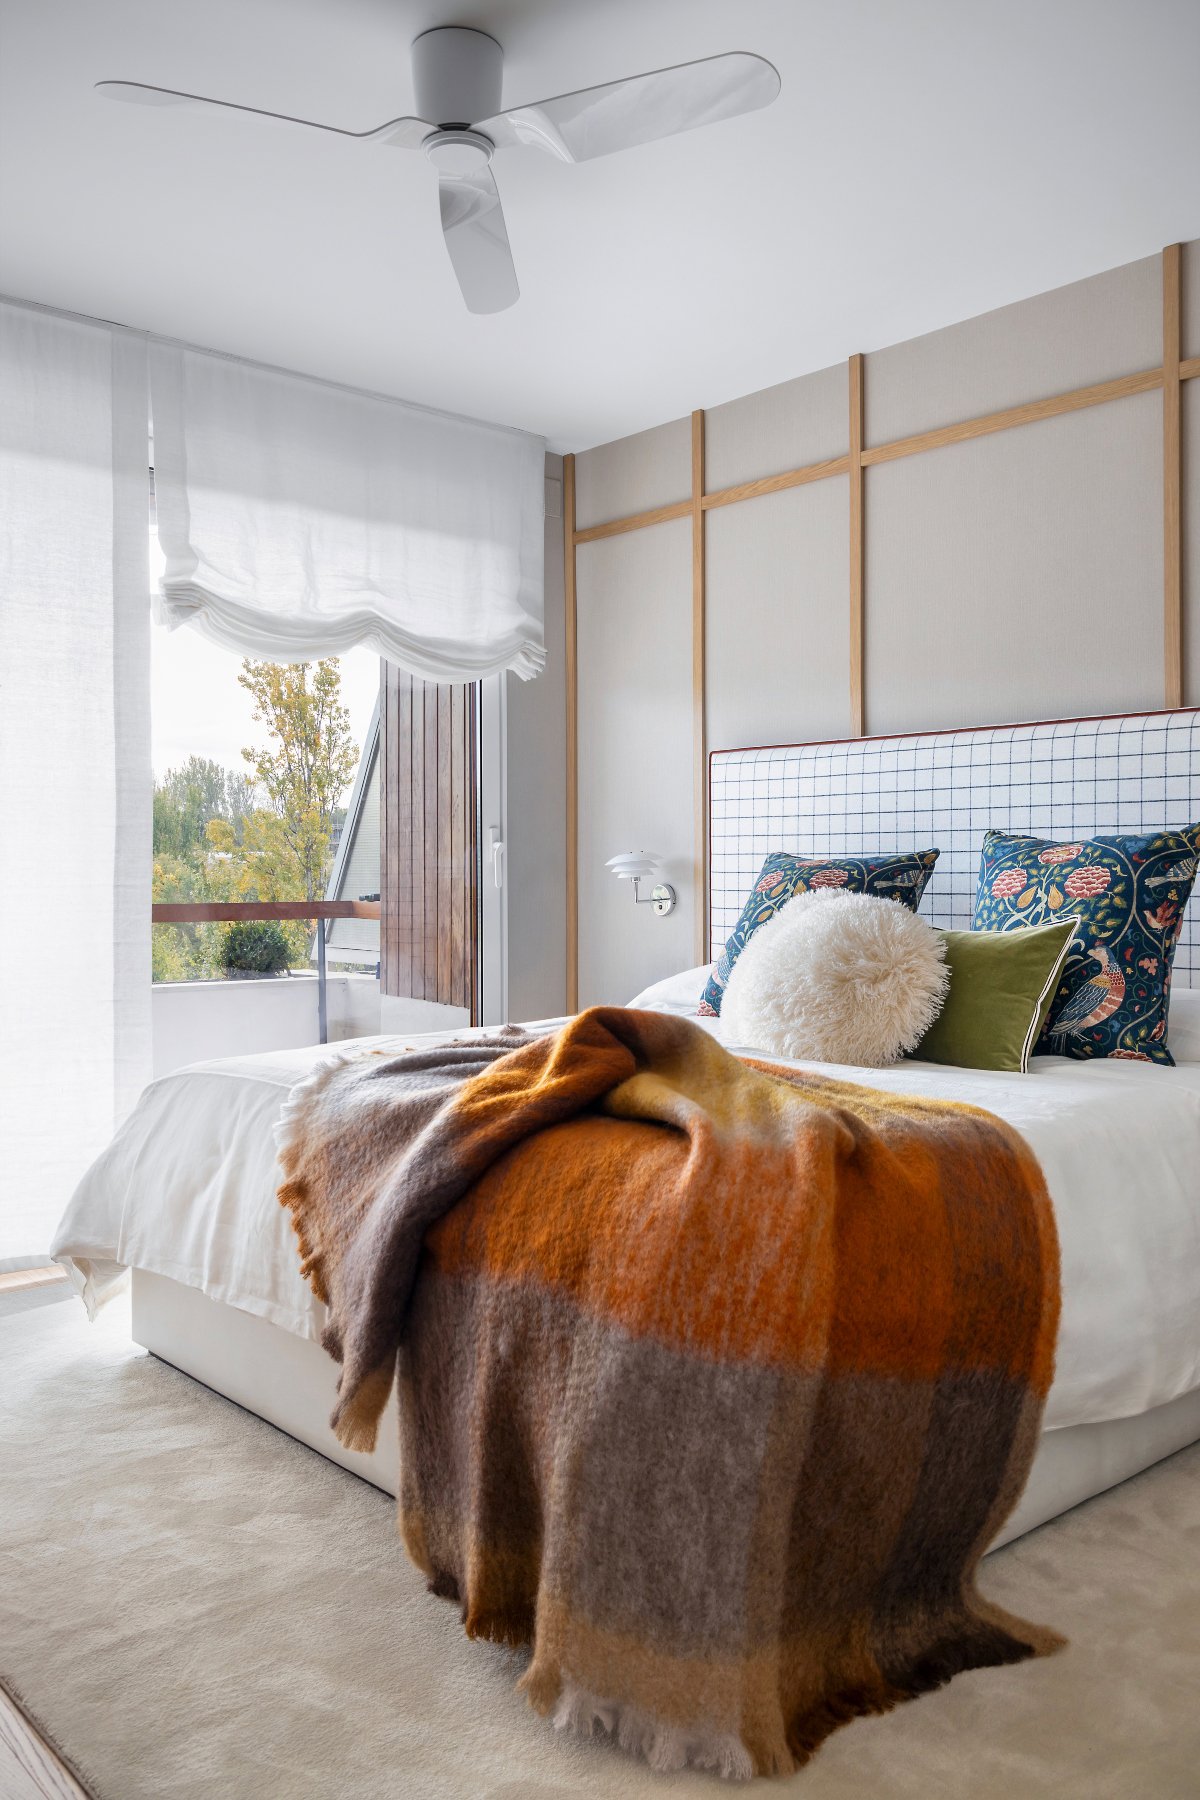 Dormitorio con molduras de madera en la pared del cabecero